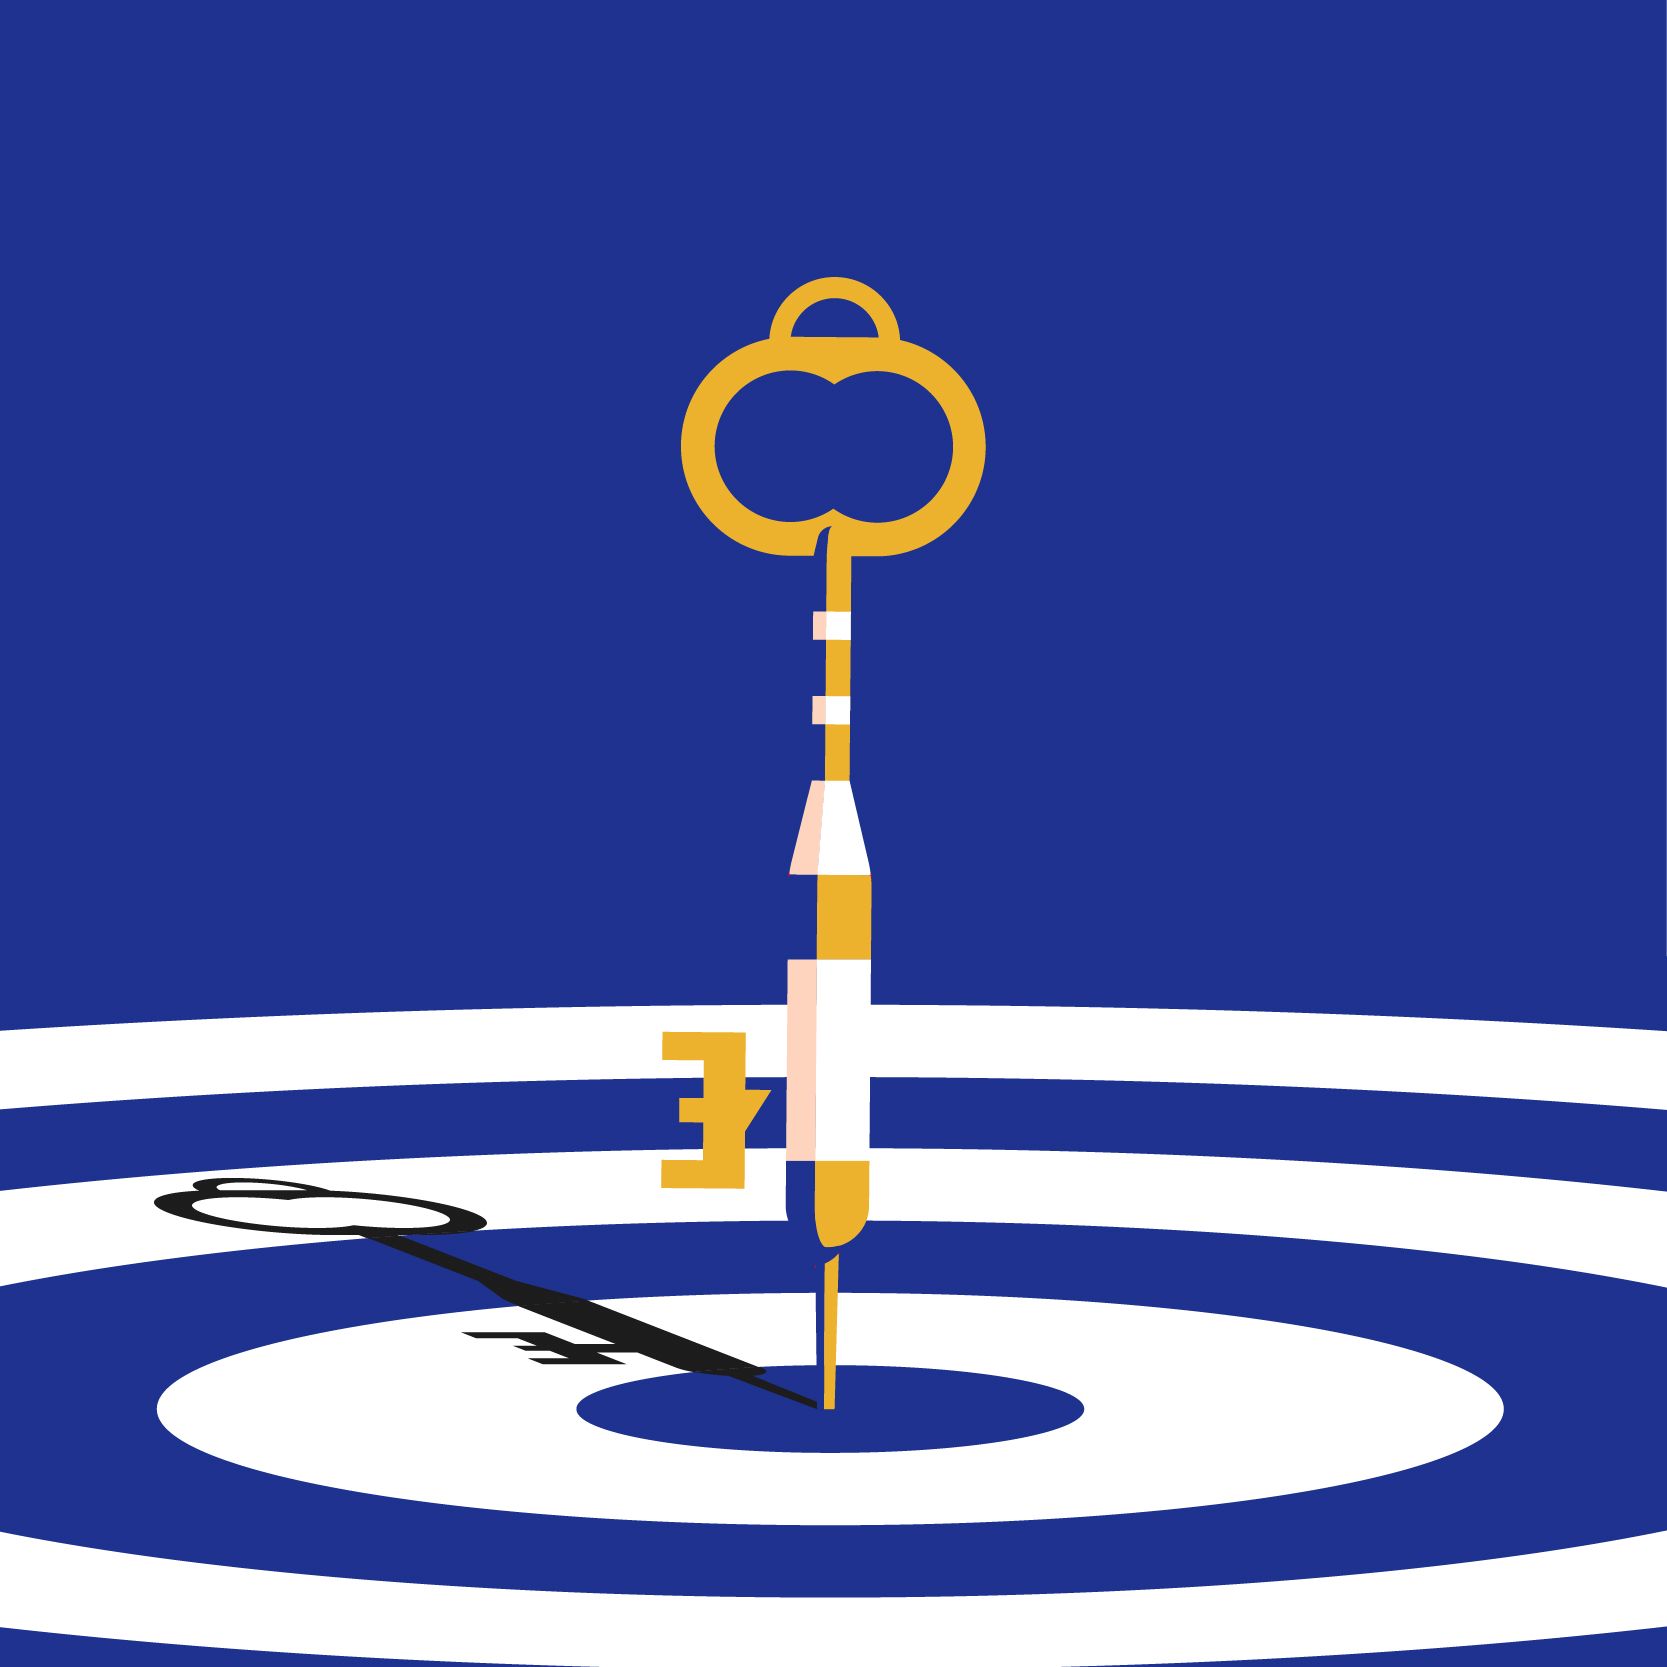 illustration of a key landing in the center of a bullseye